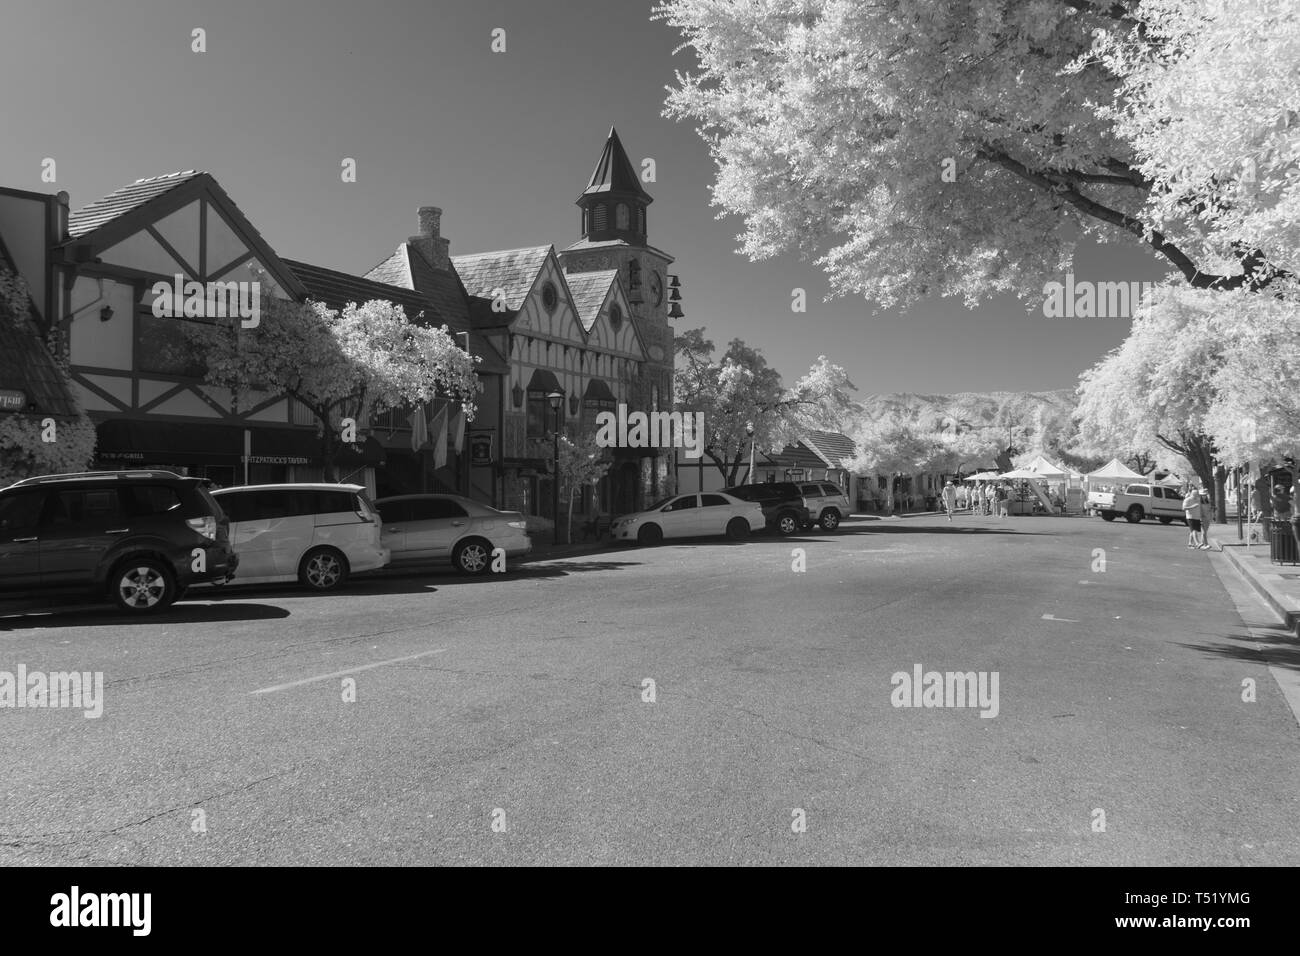 Las calles de la ciudad con turistas, los coches aparcados y arquitectura danesa. Frosty buscando árboles, blanco y negro. Foto de stock